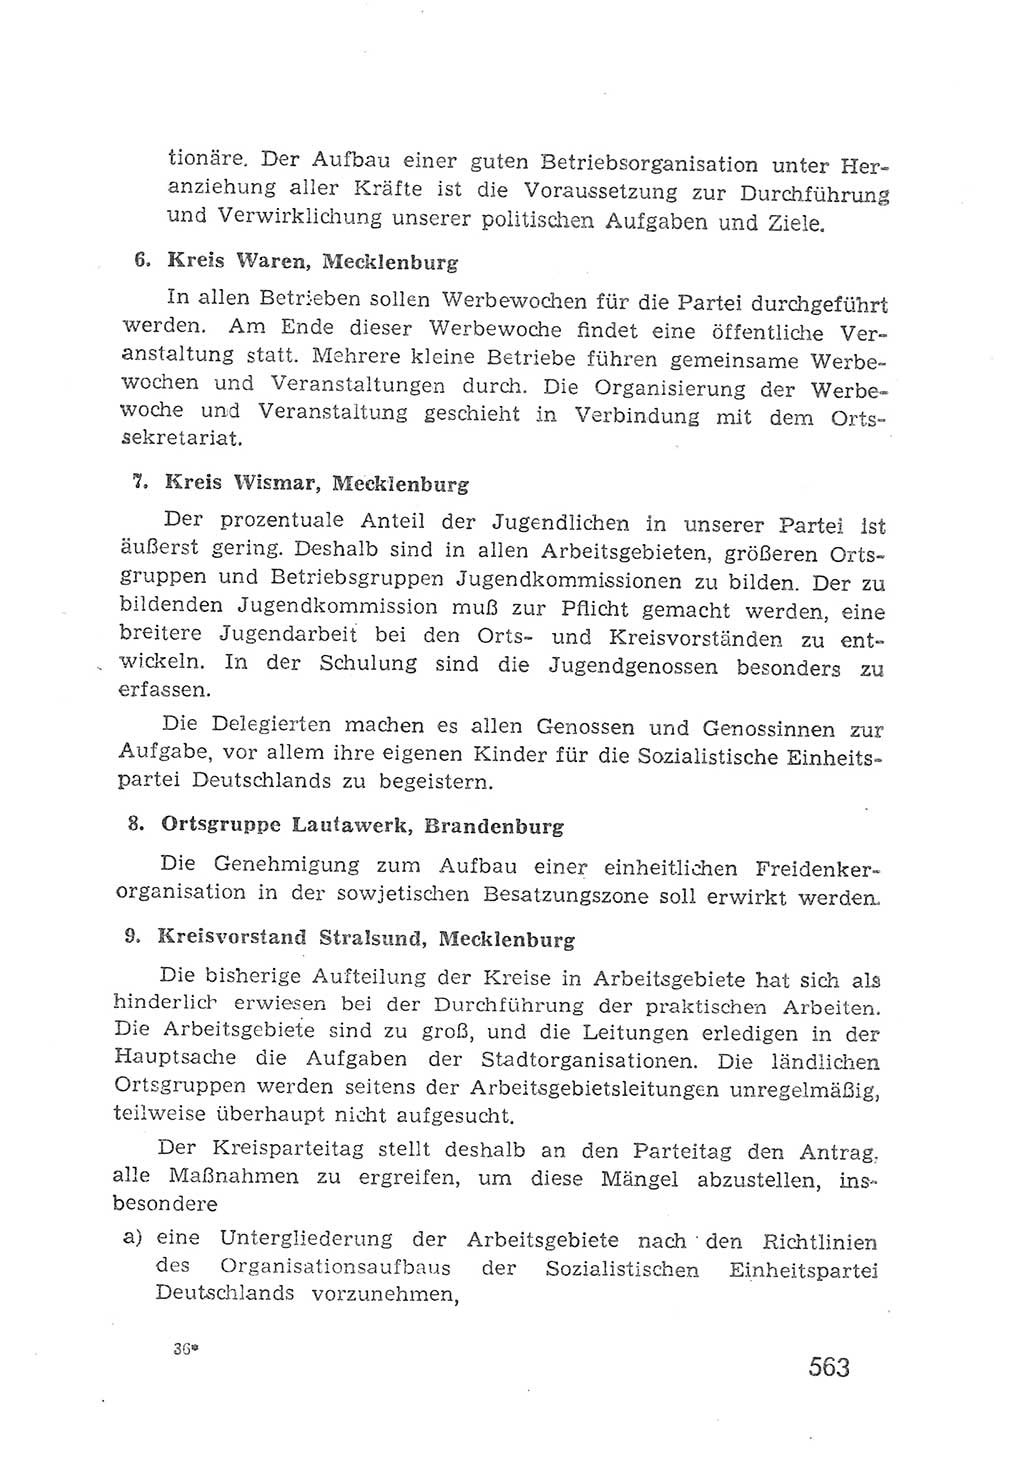 Protokoll der Verhandlungen des 2. Parteitages der Sozialistischen Einheitspartei Deutschlands (SED) [Sowjetische Besatzungszone (SBZ) Deutschlands] 1947, Seite 563 (Prot. Verh. 2. PT SED SBZ Dtl. 1947, S. 563)